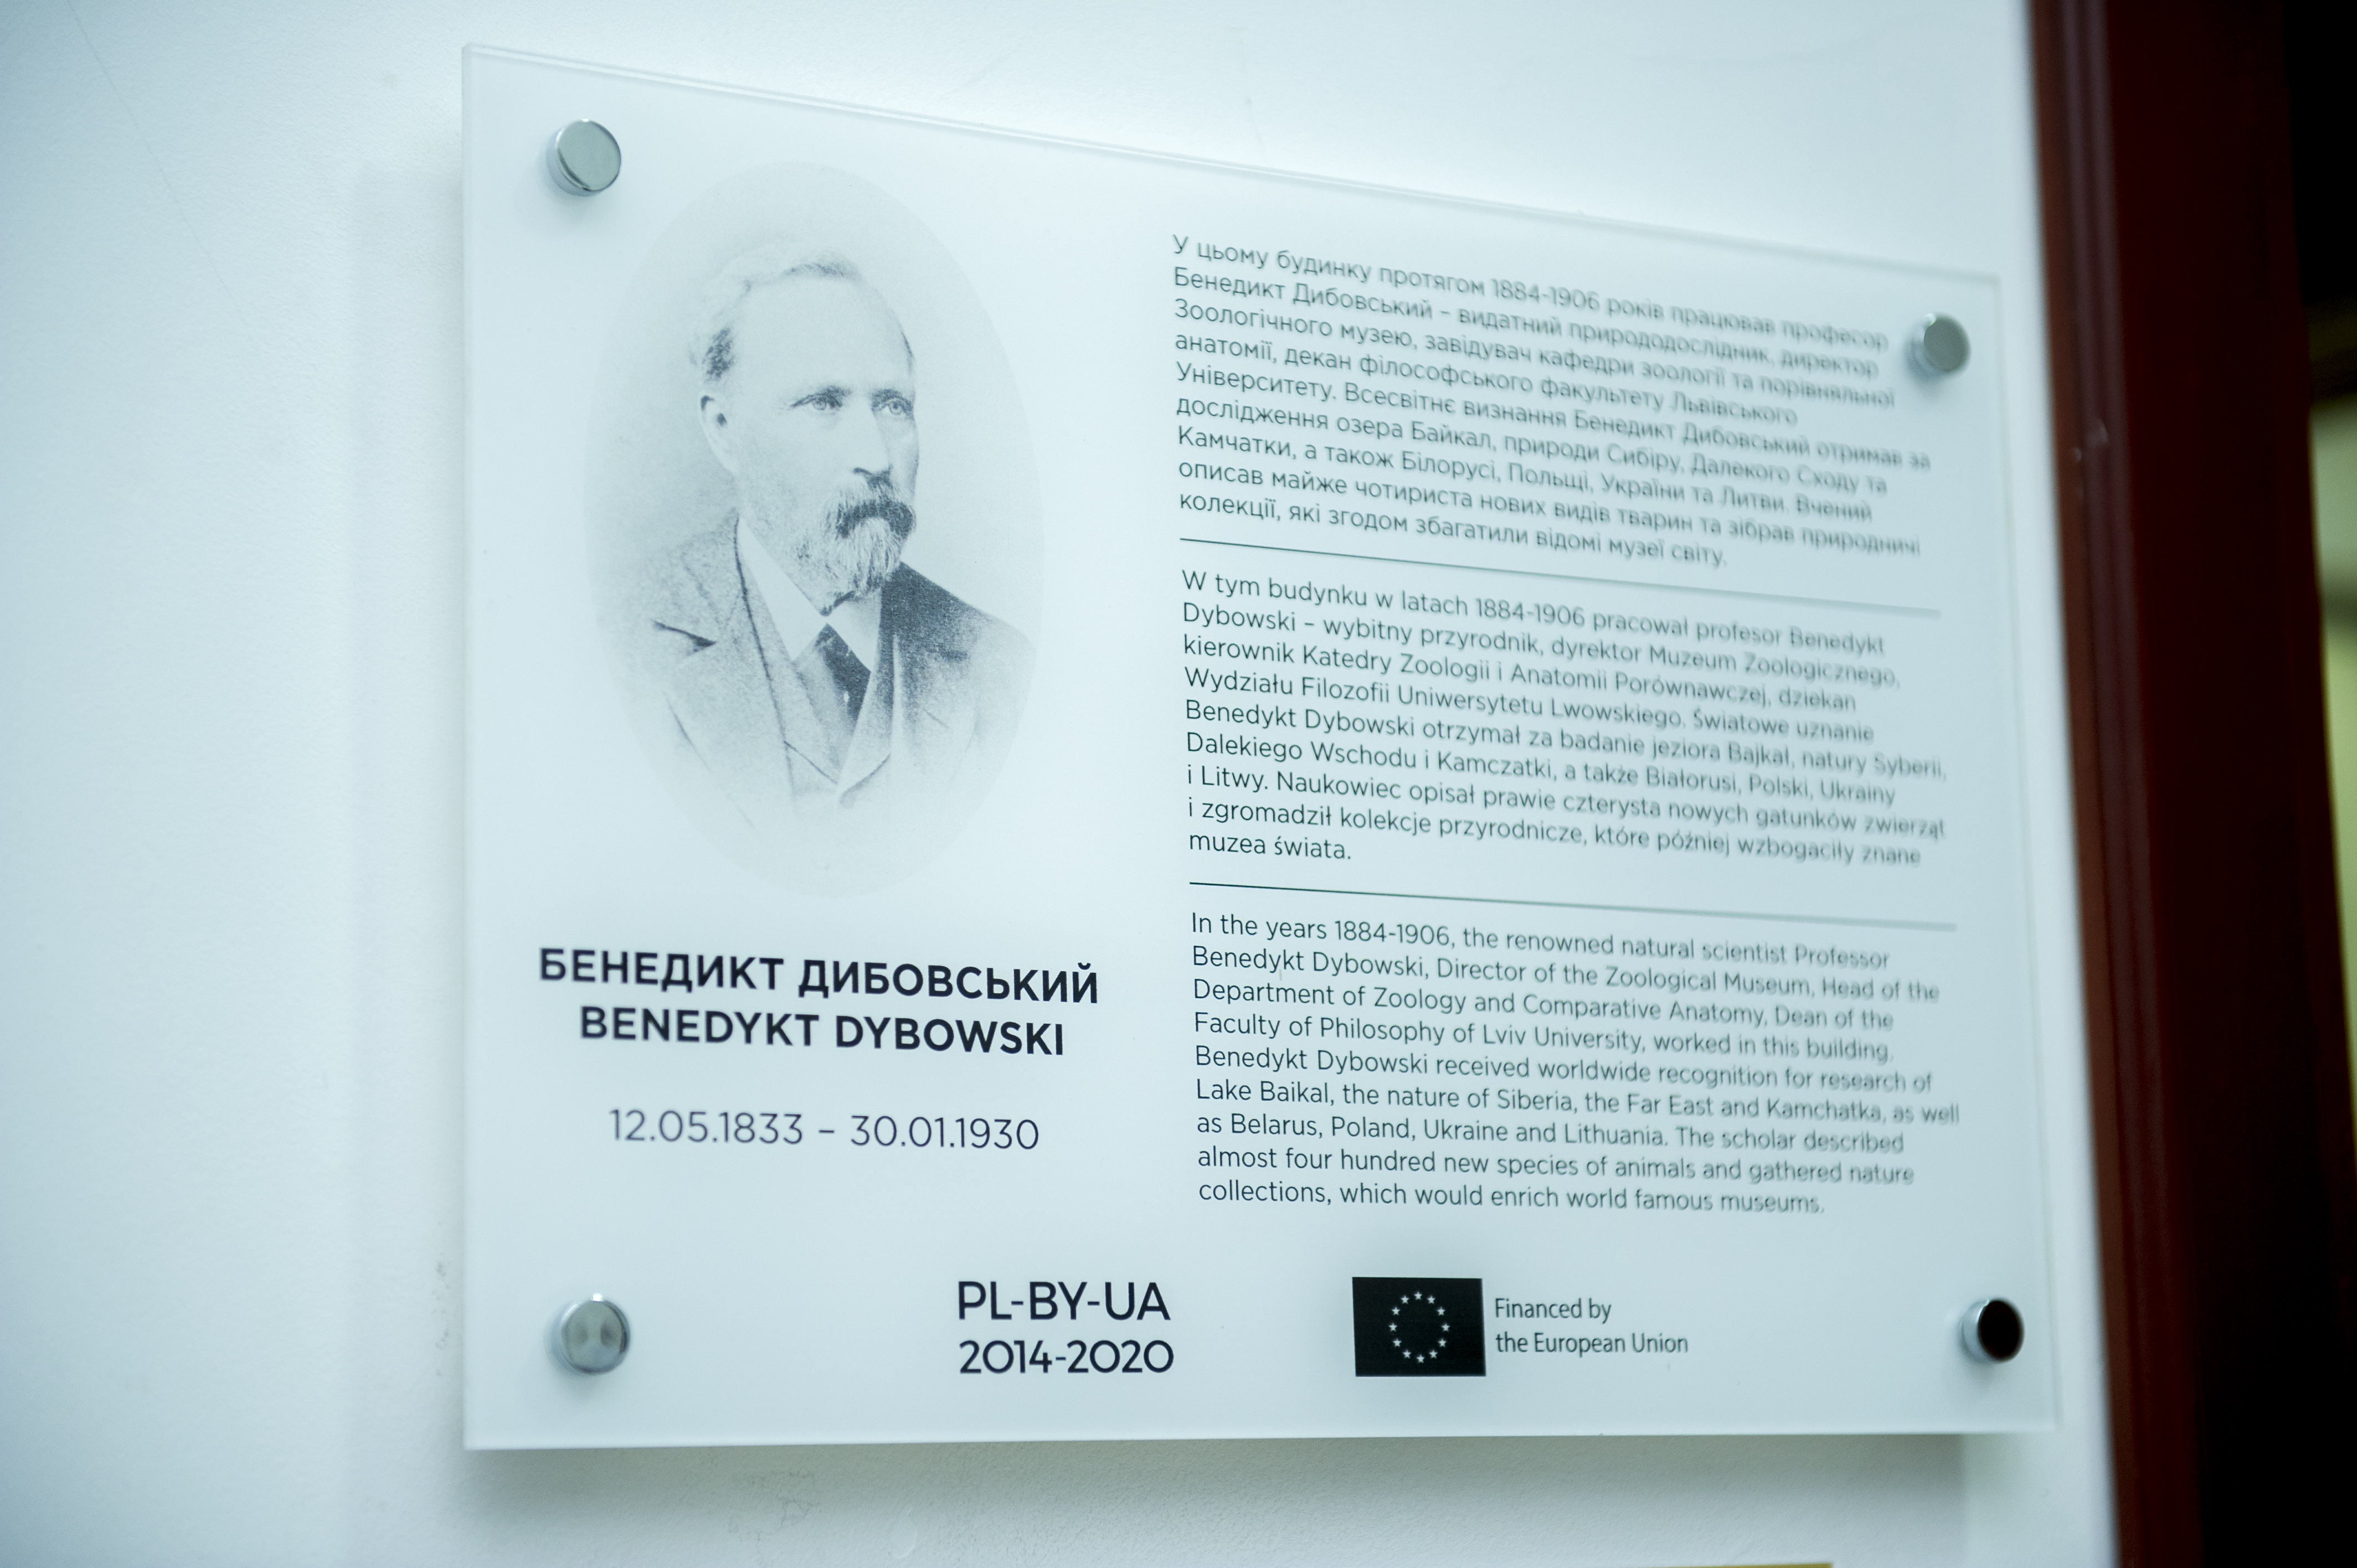 Професор Бенедикт Дибовський – визначний дослідник спільної природної спадщини Польщі, Білорусі та України